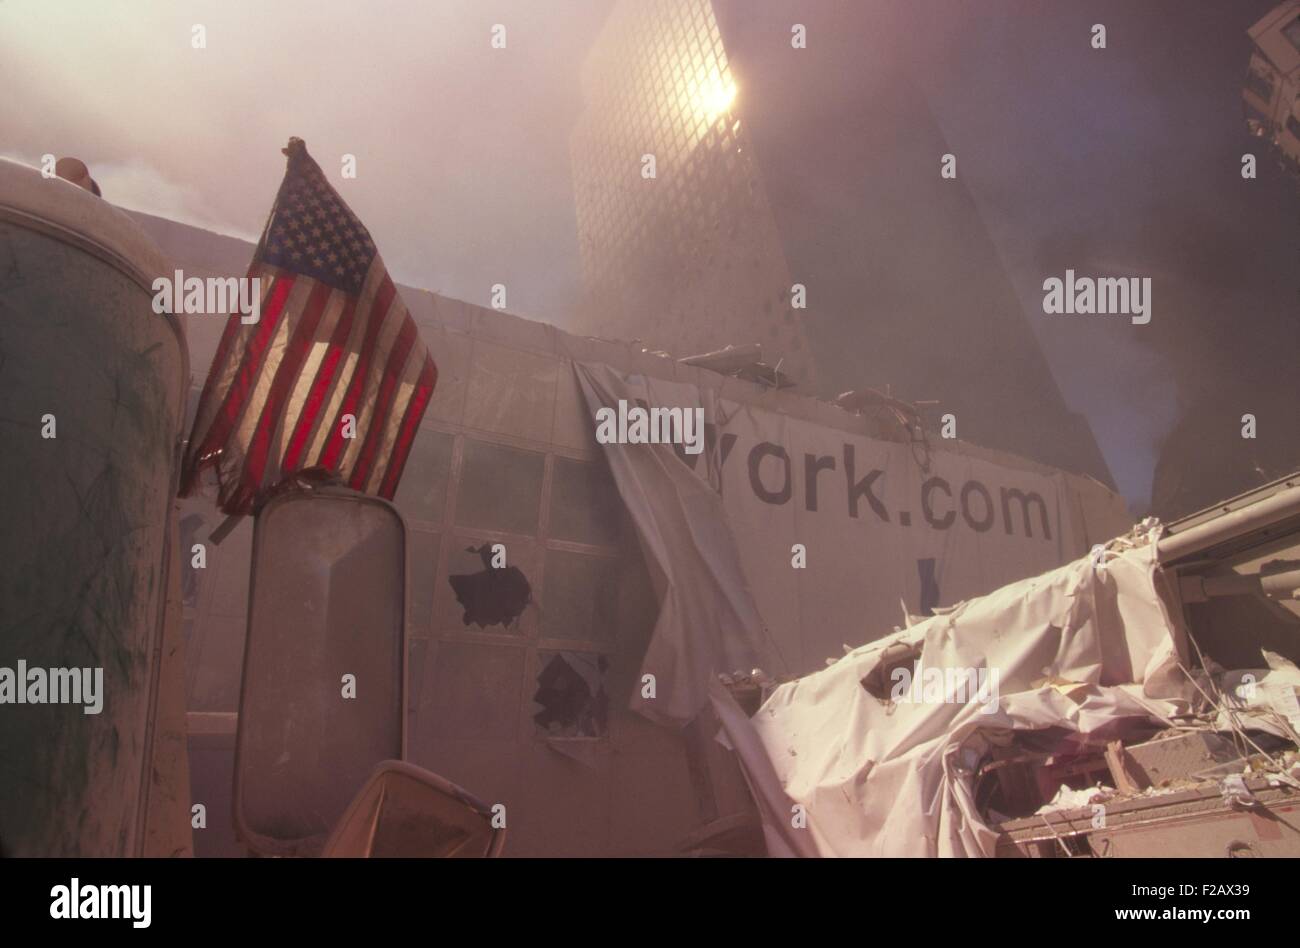 Bandiera americana piantata in macerie del World Trade Center dopo 9-11 attacchi terroristici. La struttura più vicina è un ponte pedonale sul West Side Highway (West St.) che collegava il WTC con il World Financial Center. La città di New York, settembre 11, 2001. In fondo è WFC 2. (BSLOC 2015 2 61) Foto Stock